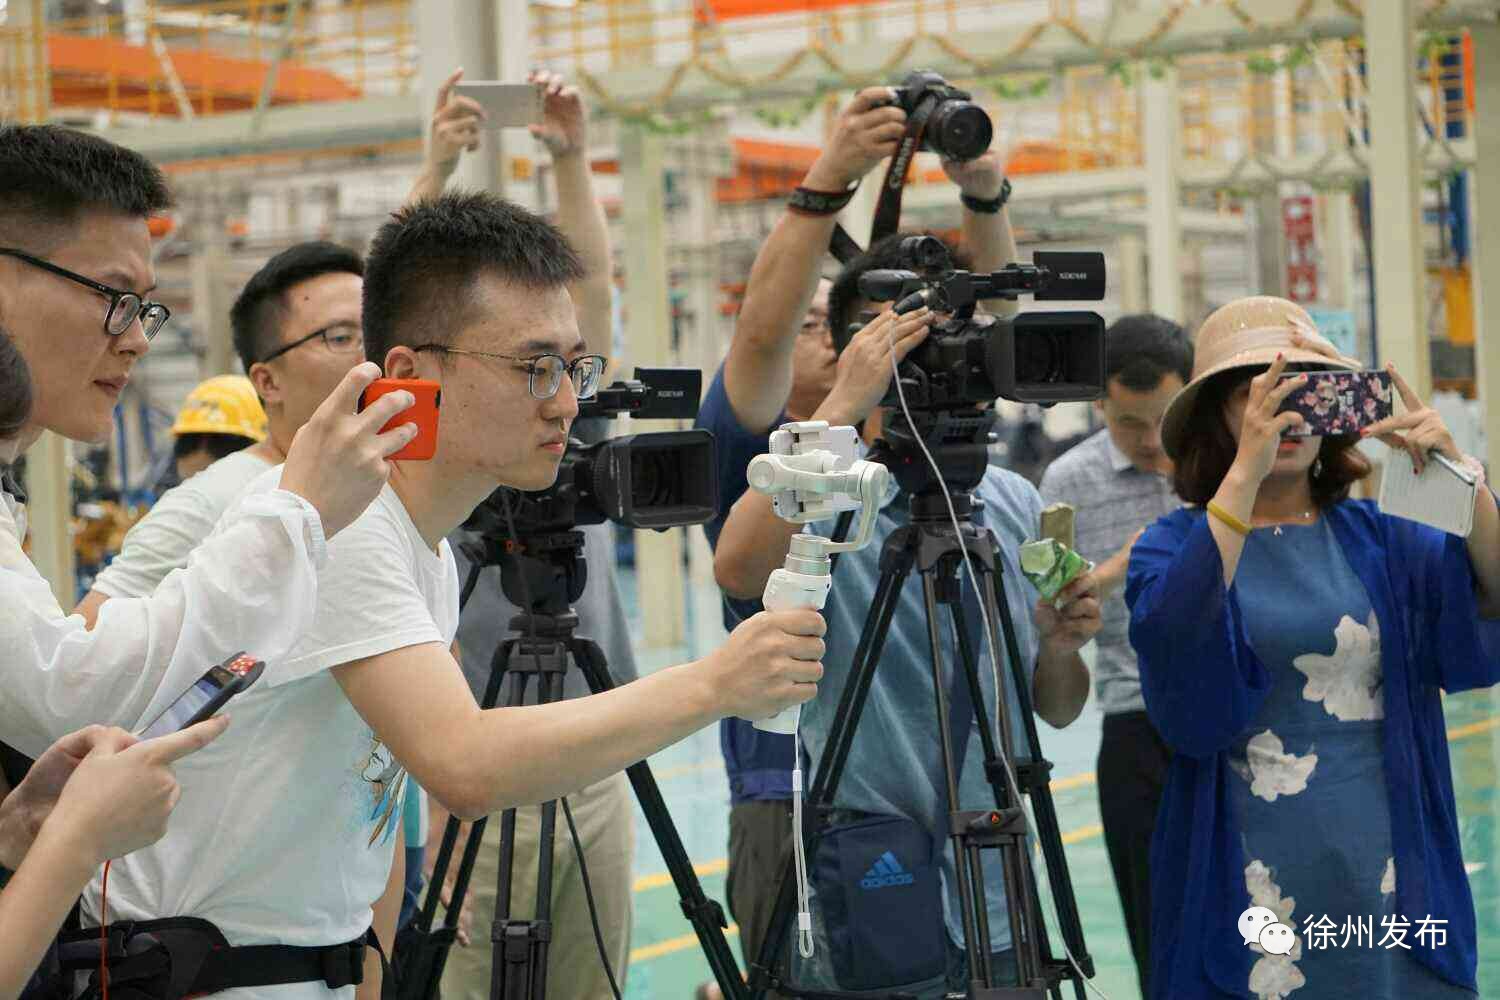 前两天,采访团走进徐州,用文字,镜头立体记录徐州发展新成就.